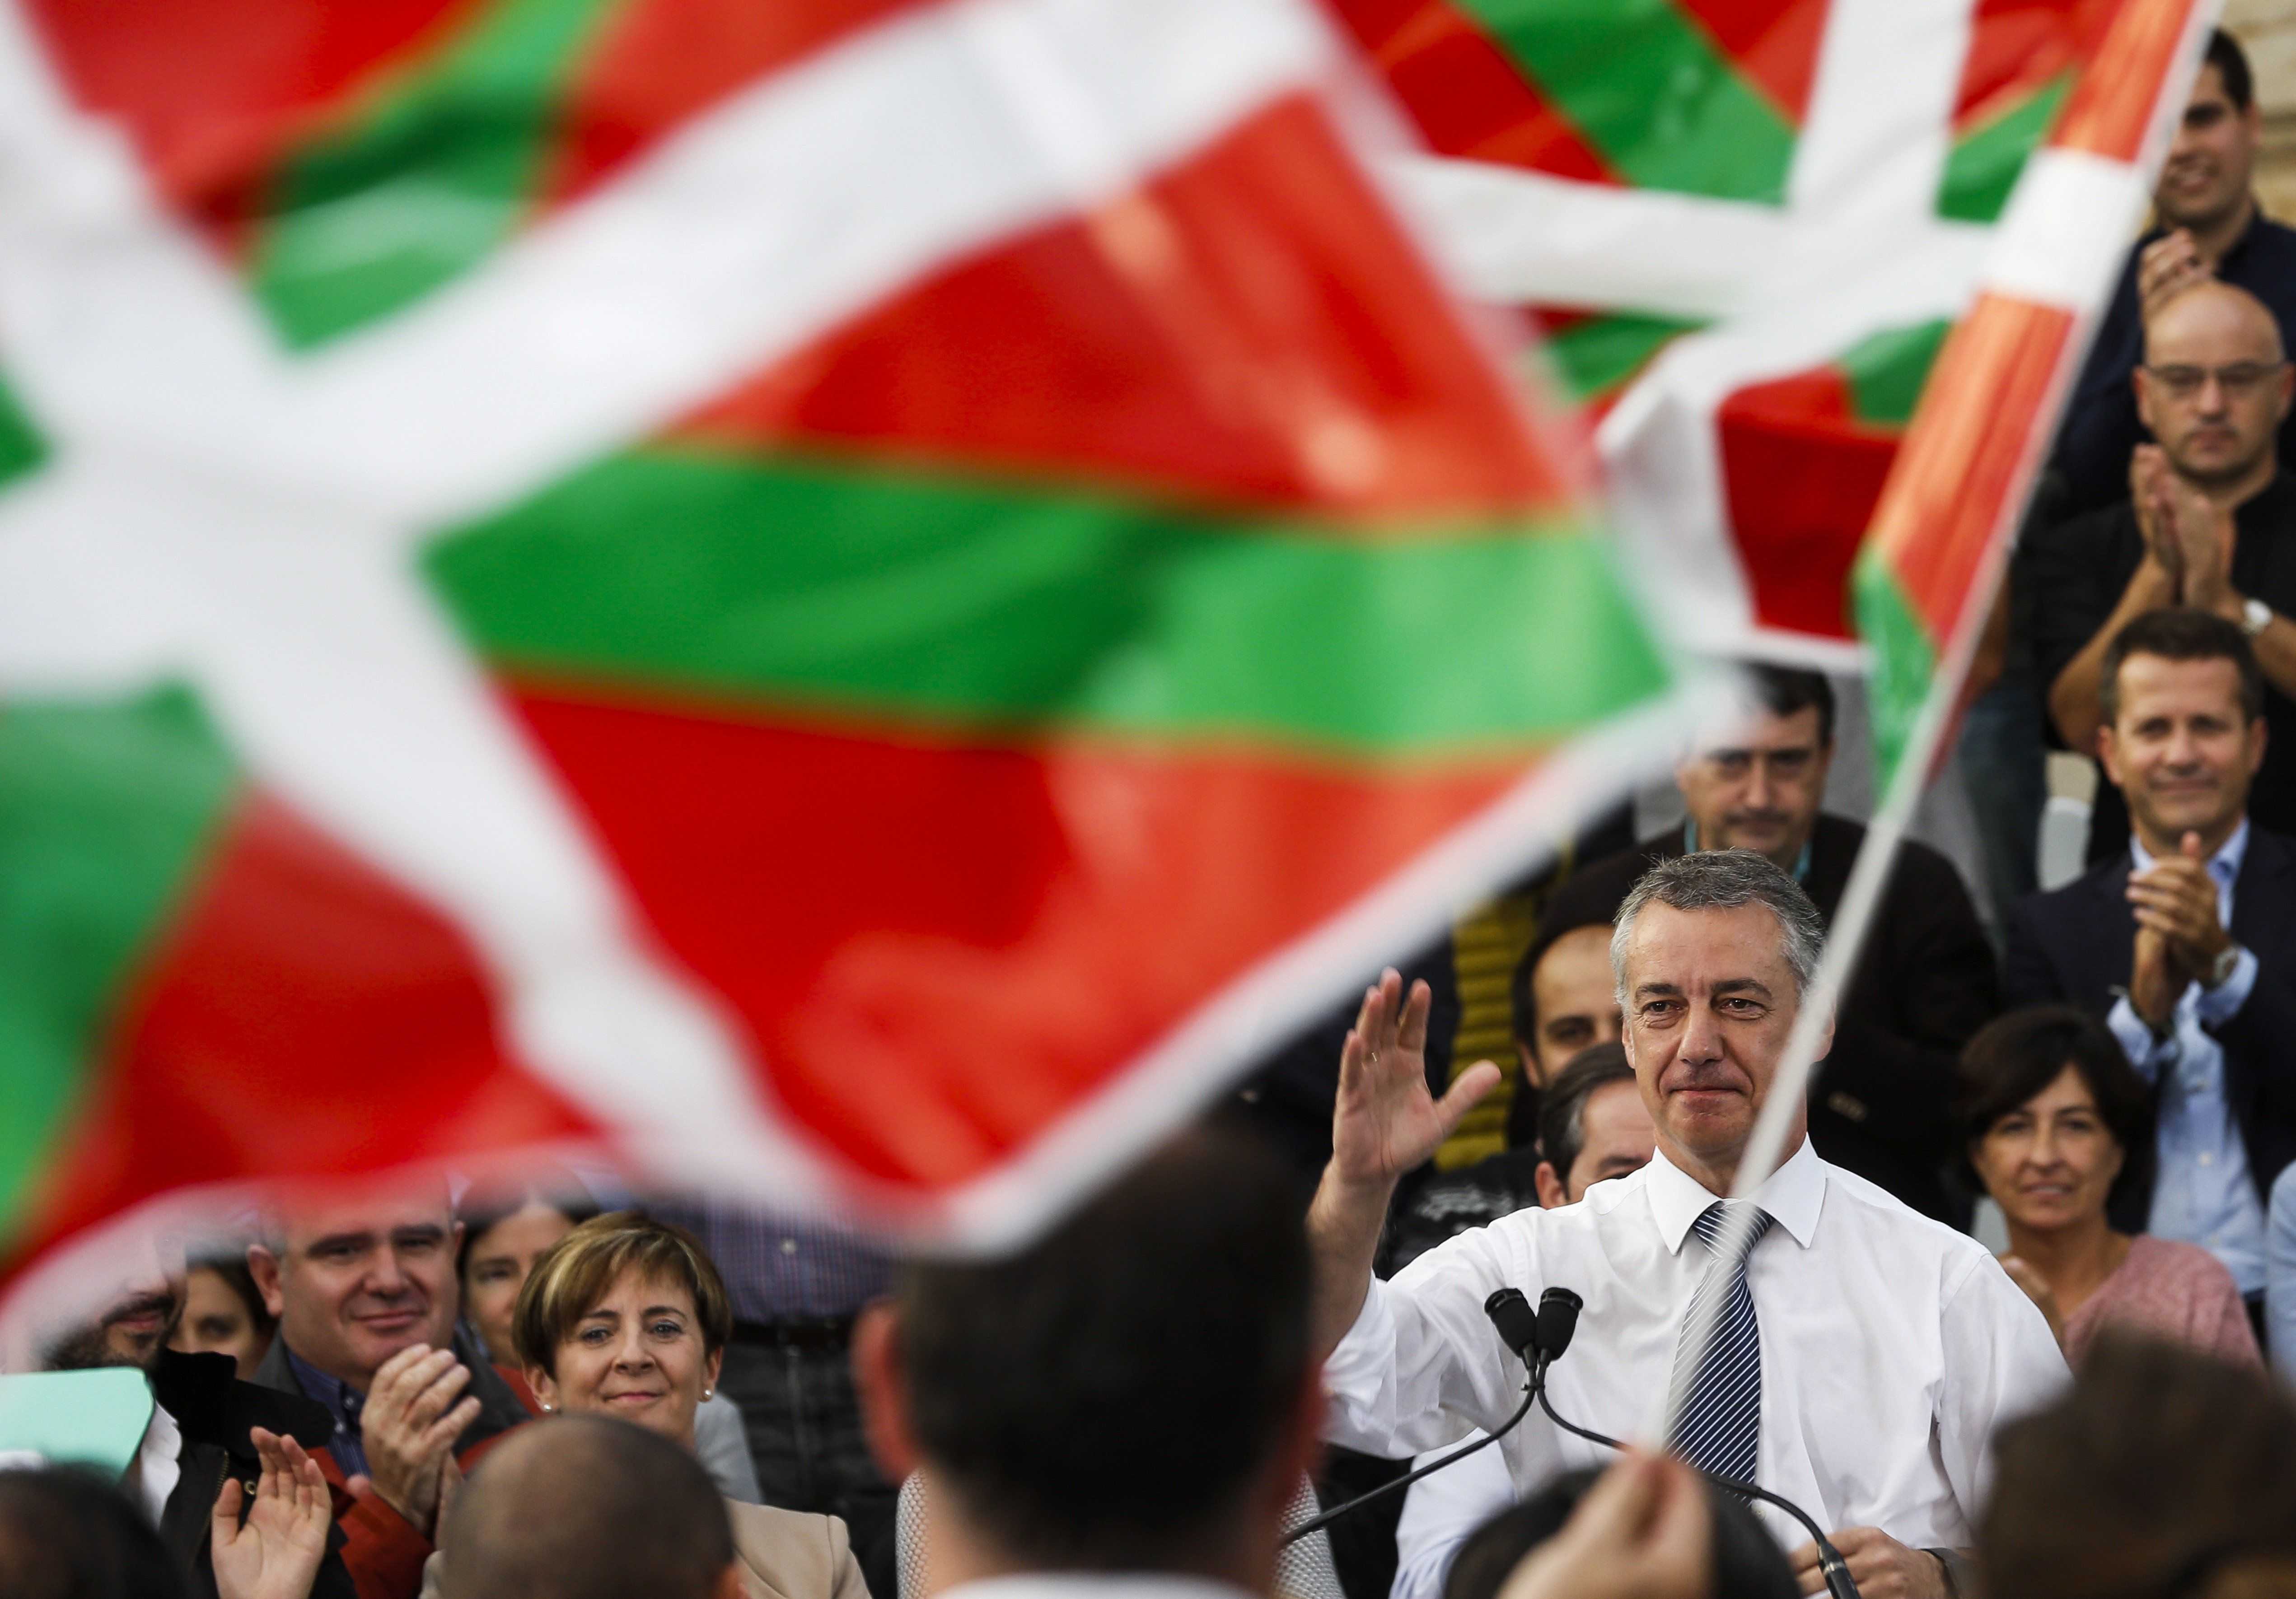 El PNV lidera Euskadi pese al calentamiento independentista